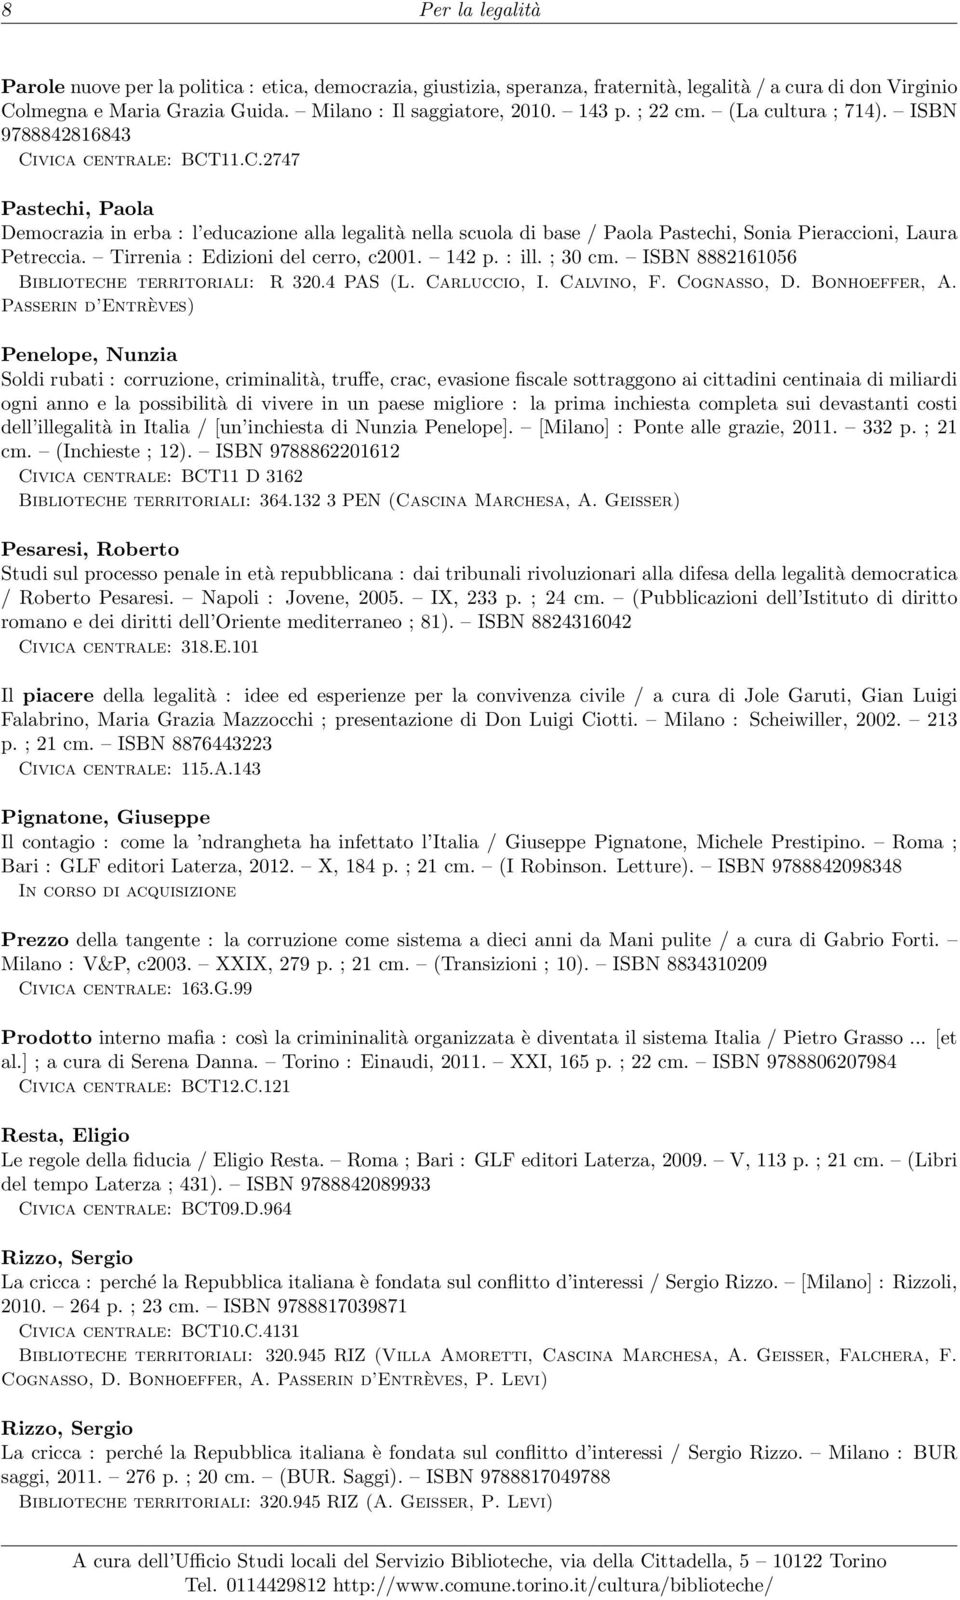 Tirrenia : Edizioni del cerro, c2001. 142 p. : ill. ; 30 cm. ISBN 8882161056 Biblioteche territoriali: R 320.4 PAS (L. Carluccio, I. Calvino, F. Cognasso, D. Bonhoeffer, A.